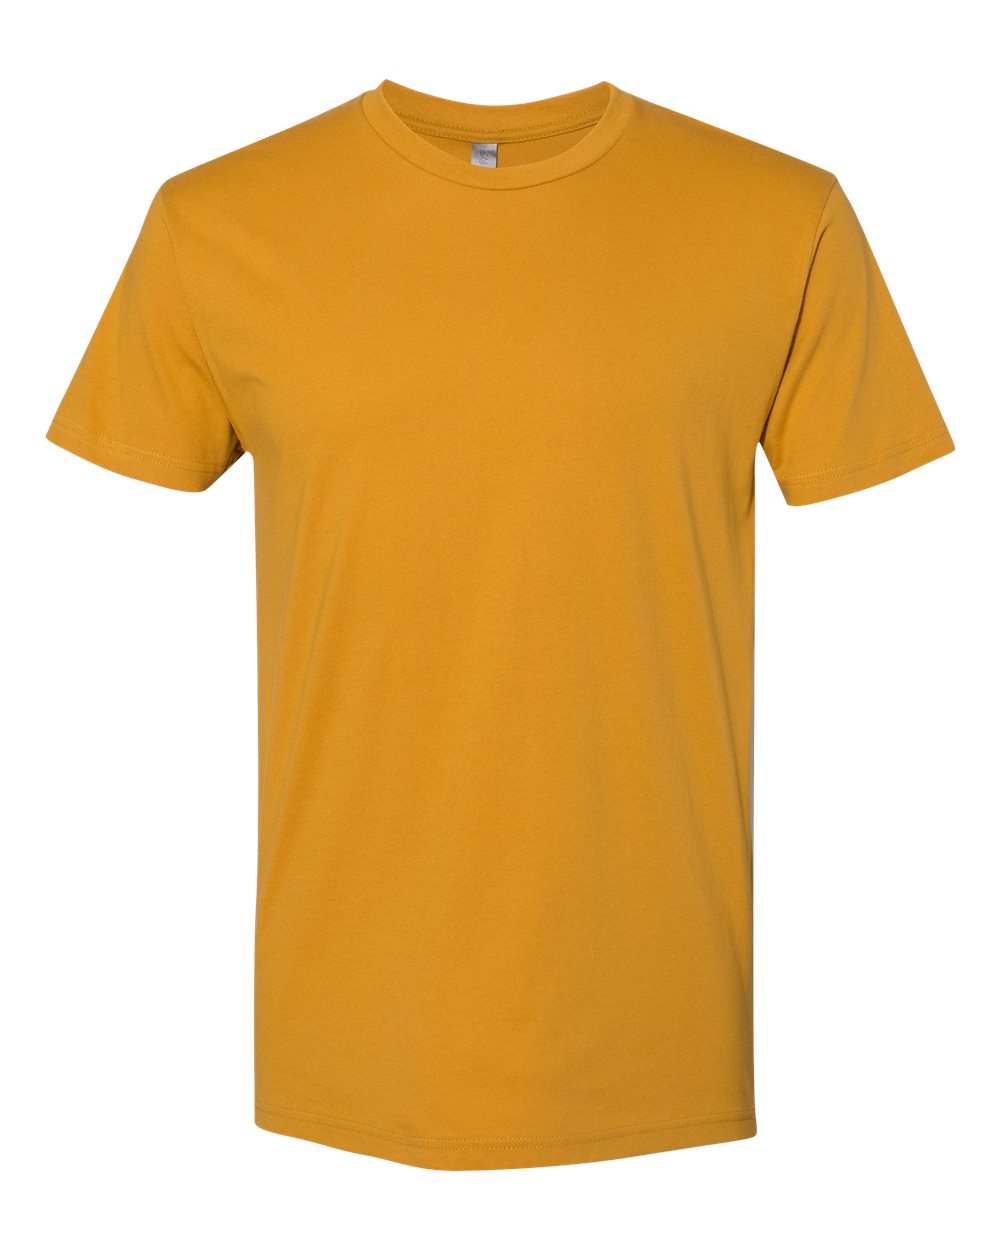 Next Level - Unisex Cotton T-Shirt - 3600